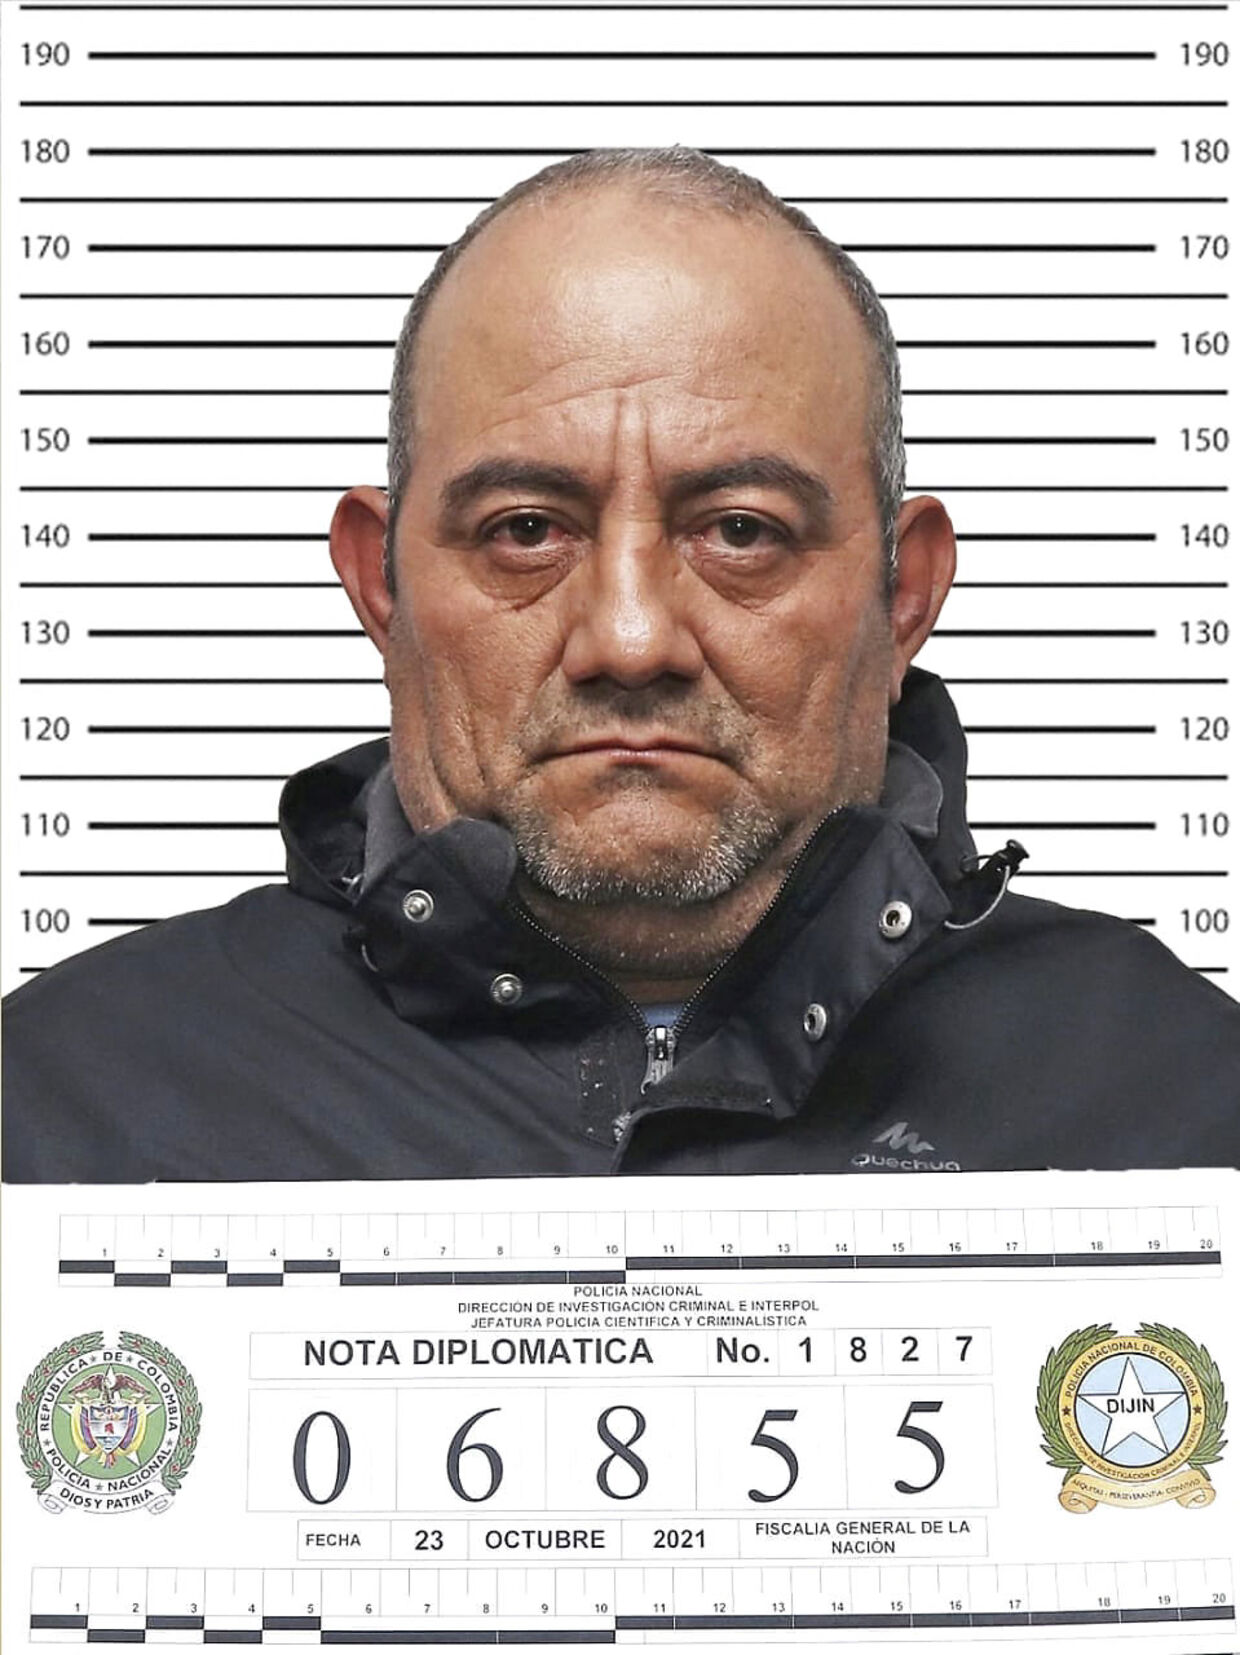 I oktober blev gruppens leder 'Otoniel' udleveret til USA og anklaget for narkotikasmugling. Gruppen smugler dog fortsat narkotika ufortrødent. Foto: Colombian National Police/AFP